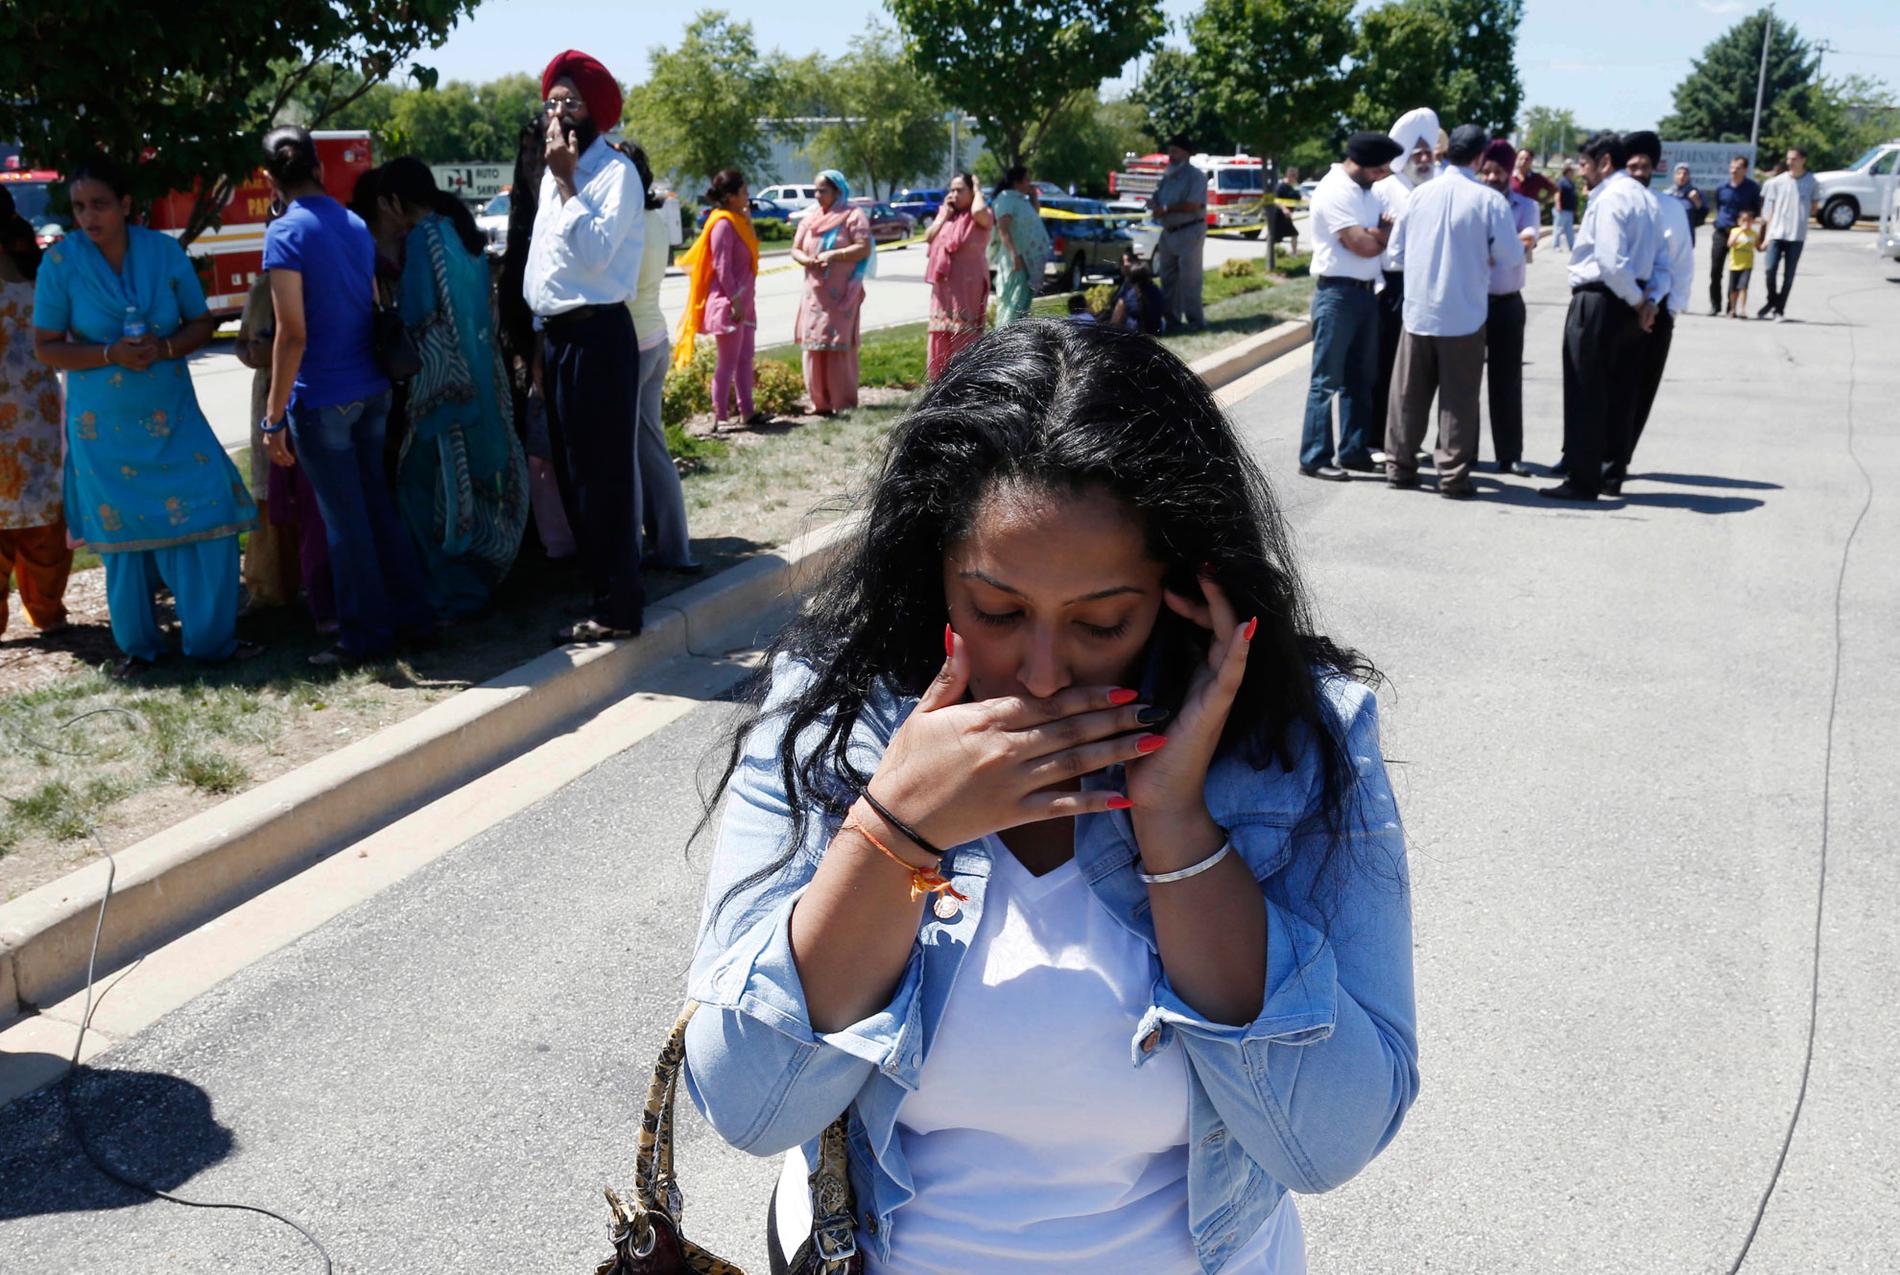 En kvinna utanför templet i Oak Creek där anhöriga väntade på besked efter skottdramat.